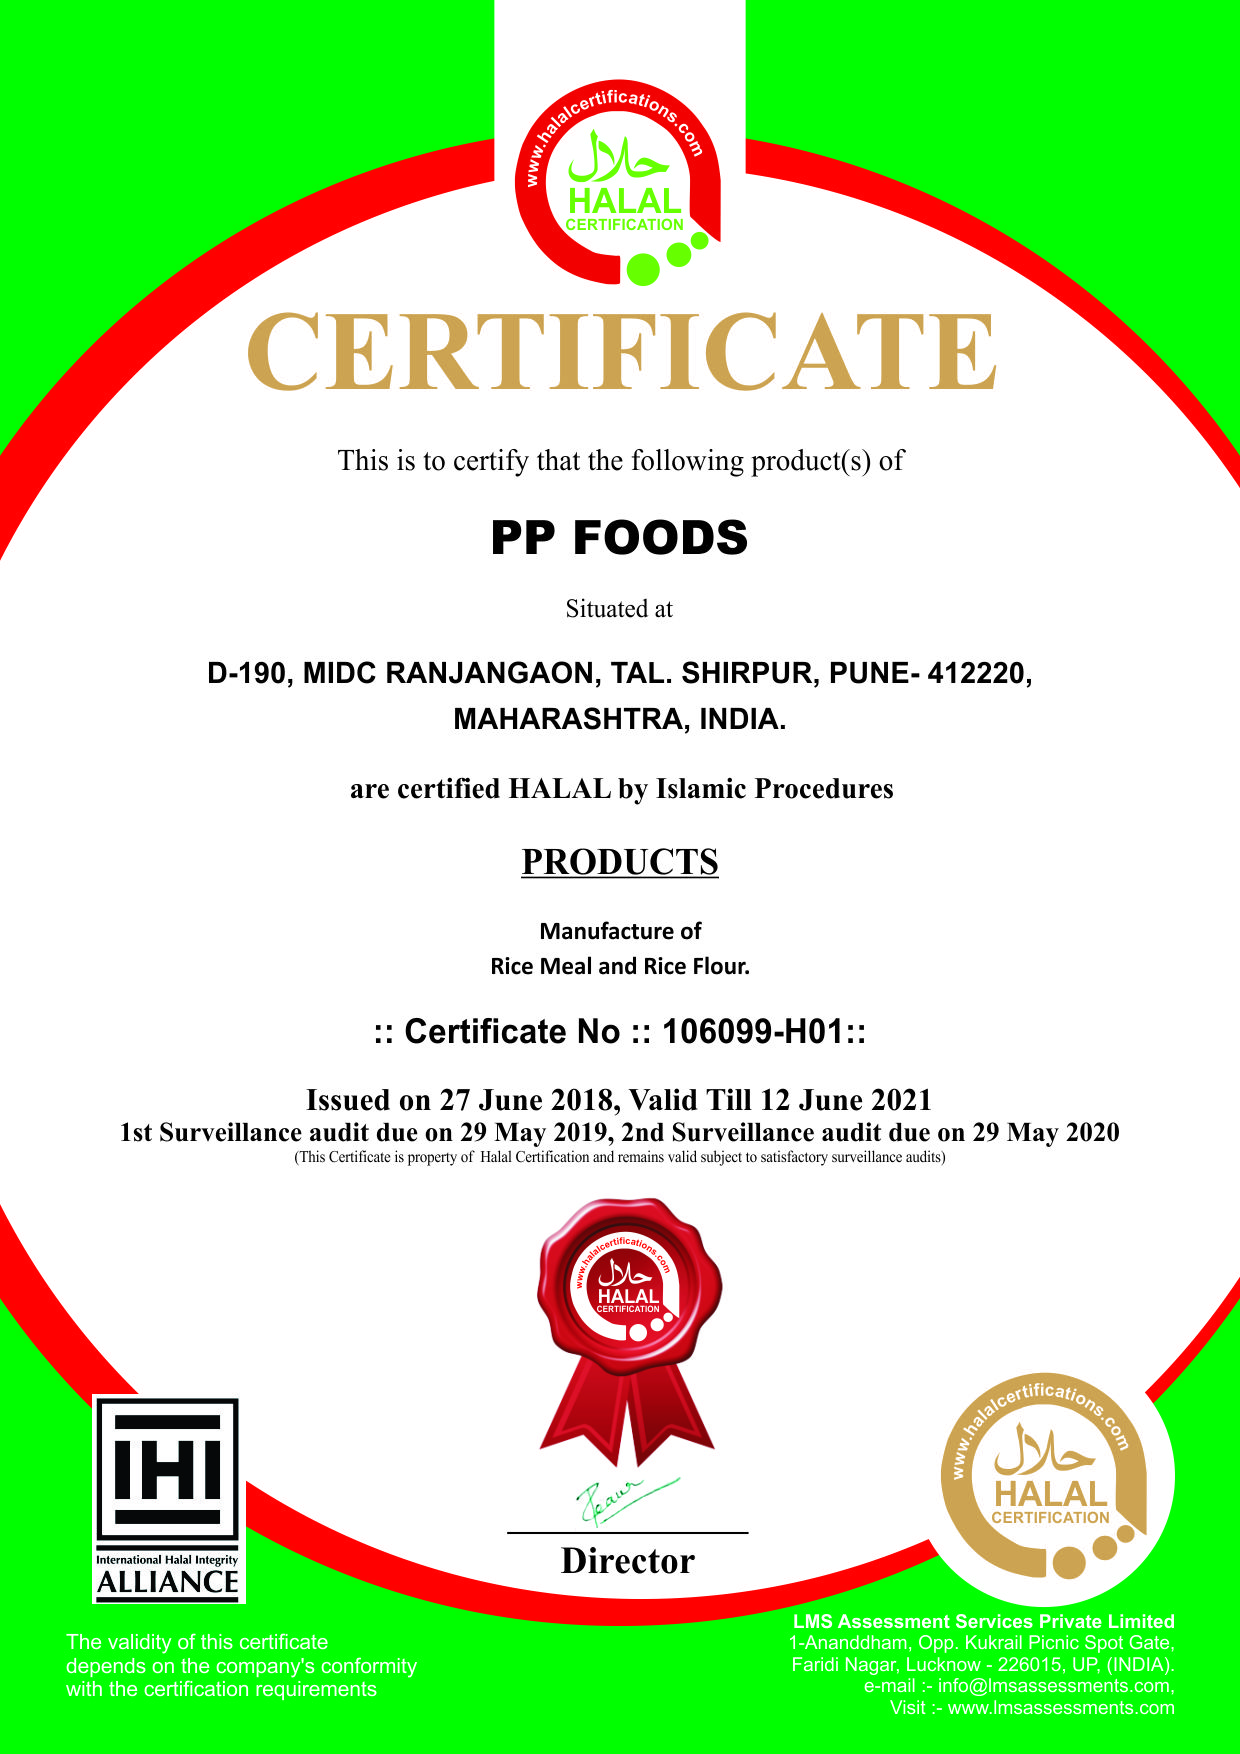 PP Foods obtains Halal Certification